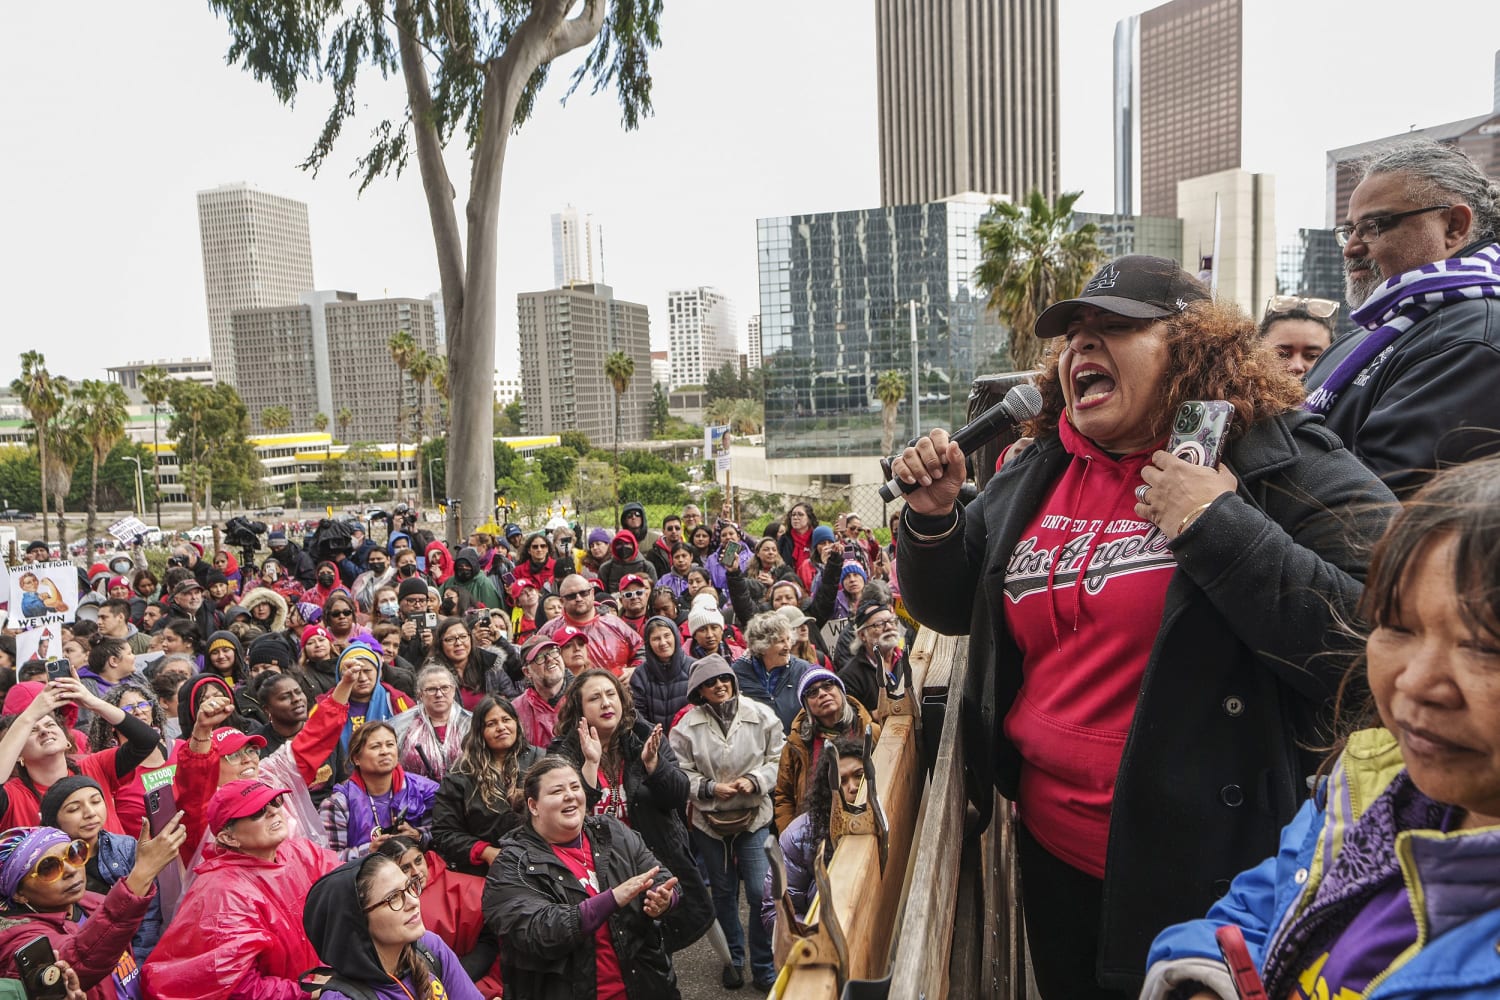 Los Angeles strike highlights paltry school worker pay in U.S.